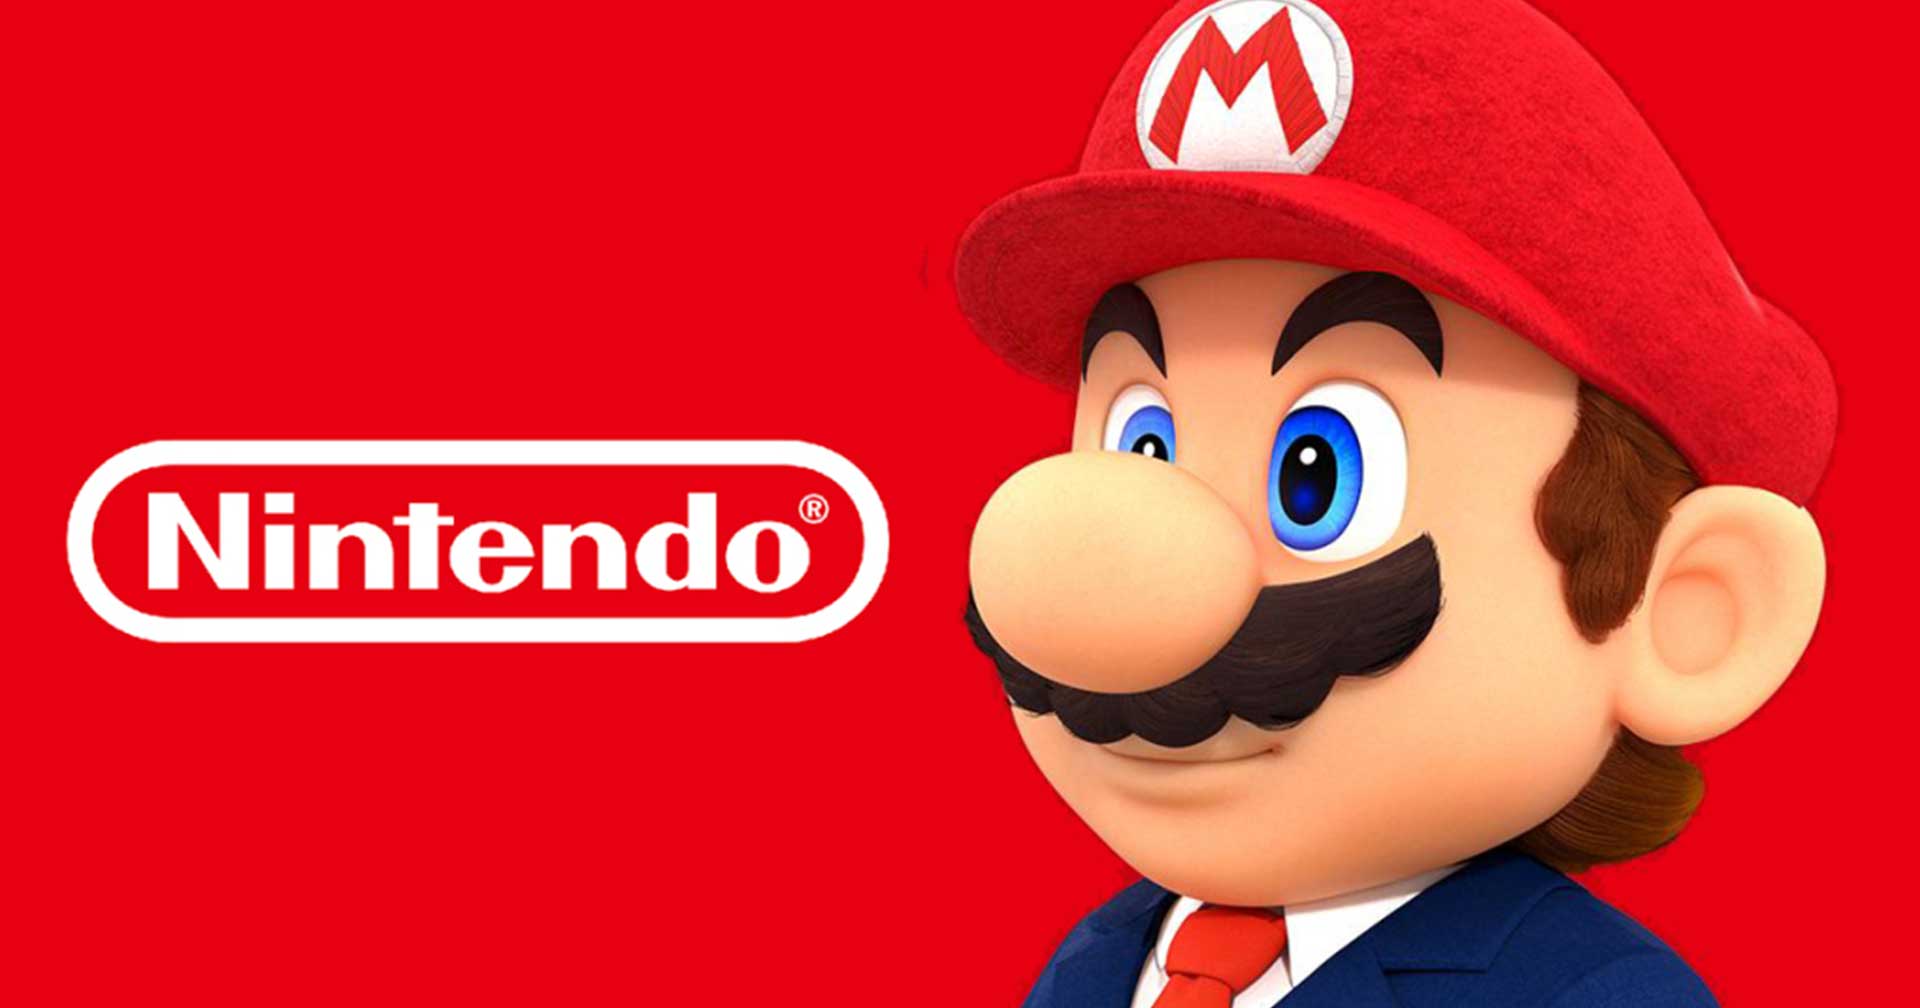 อดีตพนักงาน Nintendo ออกมาโวยว่าตนโดนไล่ออกอย่างไม่เป็นธรรม